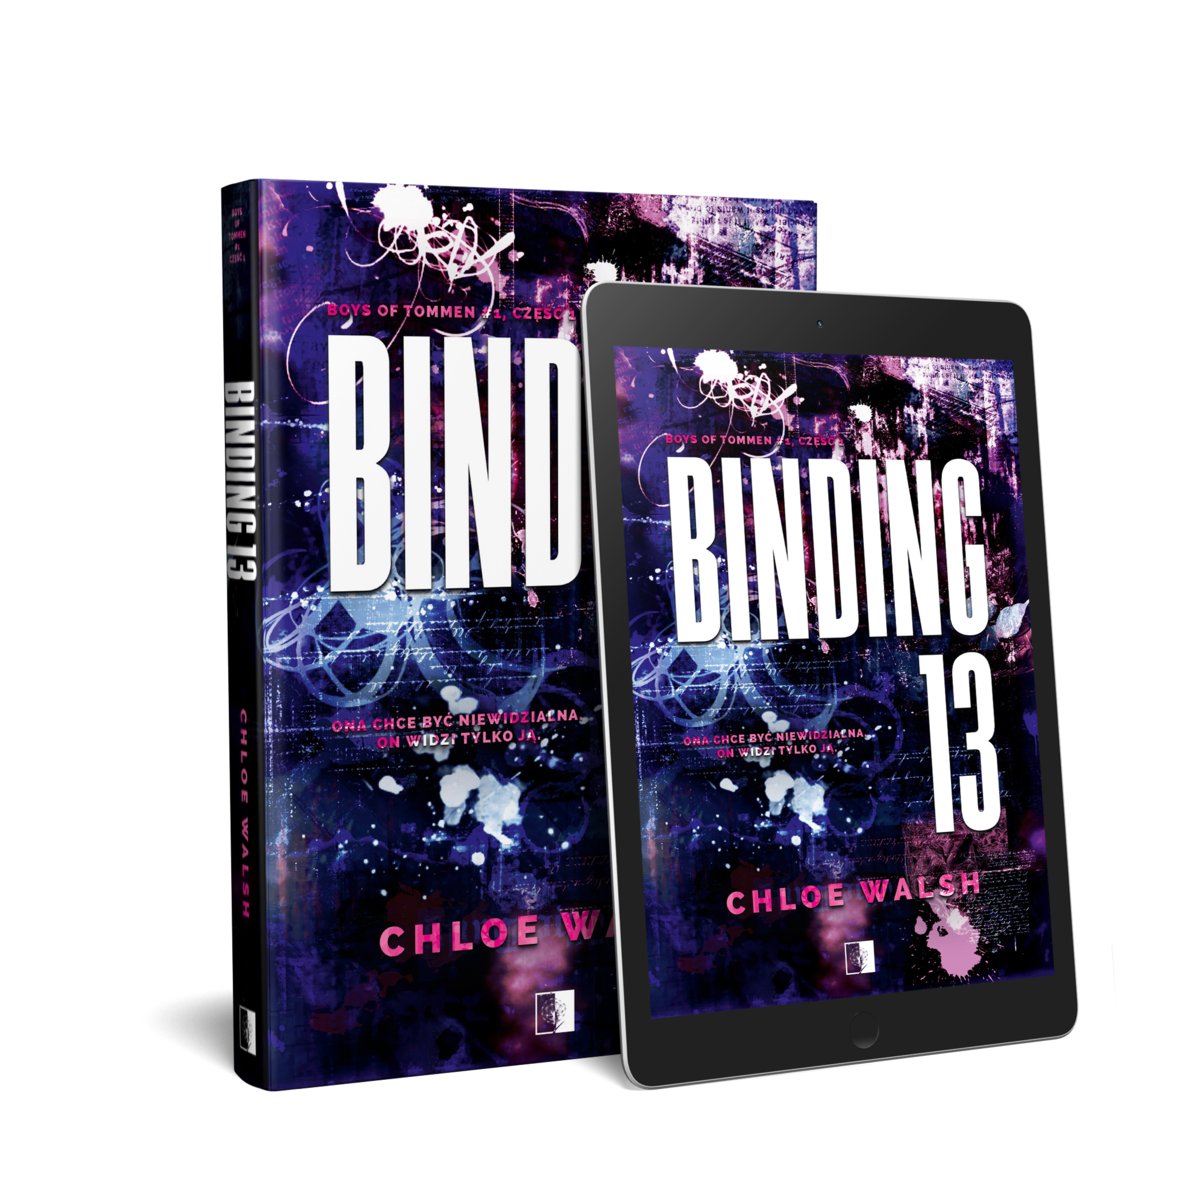 Binding 13. Część druga – Chloe Walsh, Ebook w epub, mobi